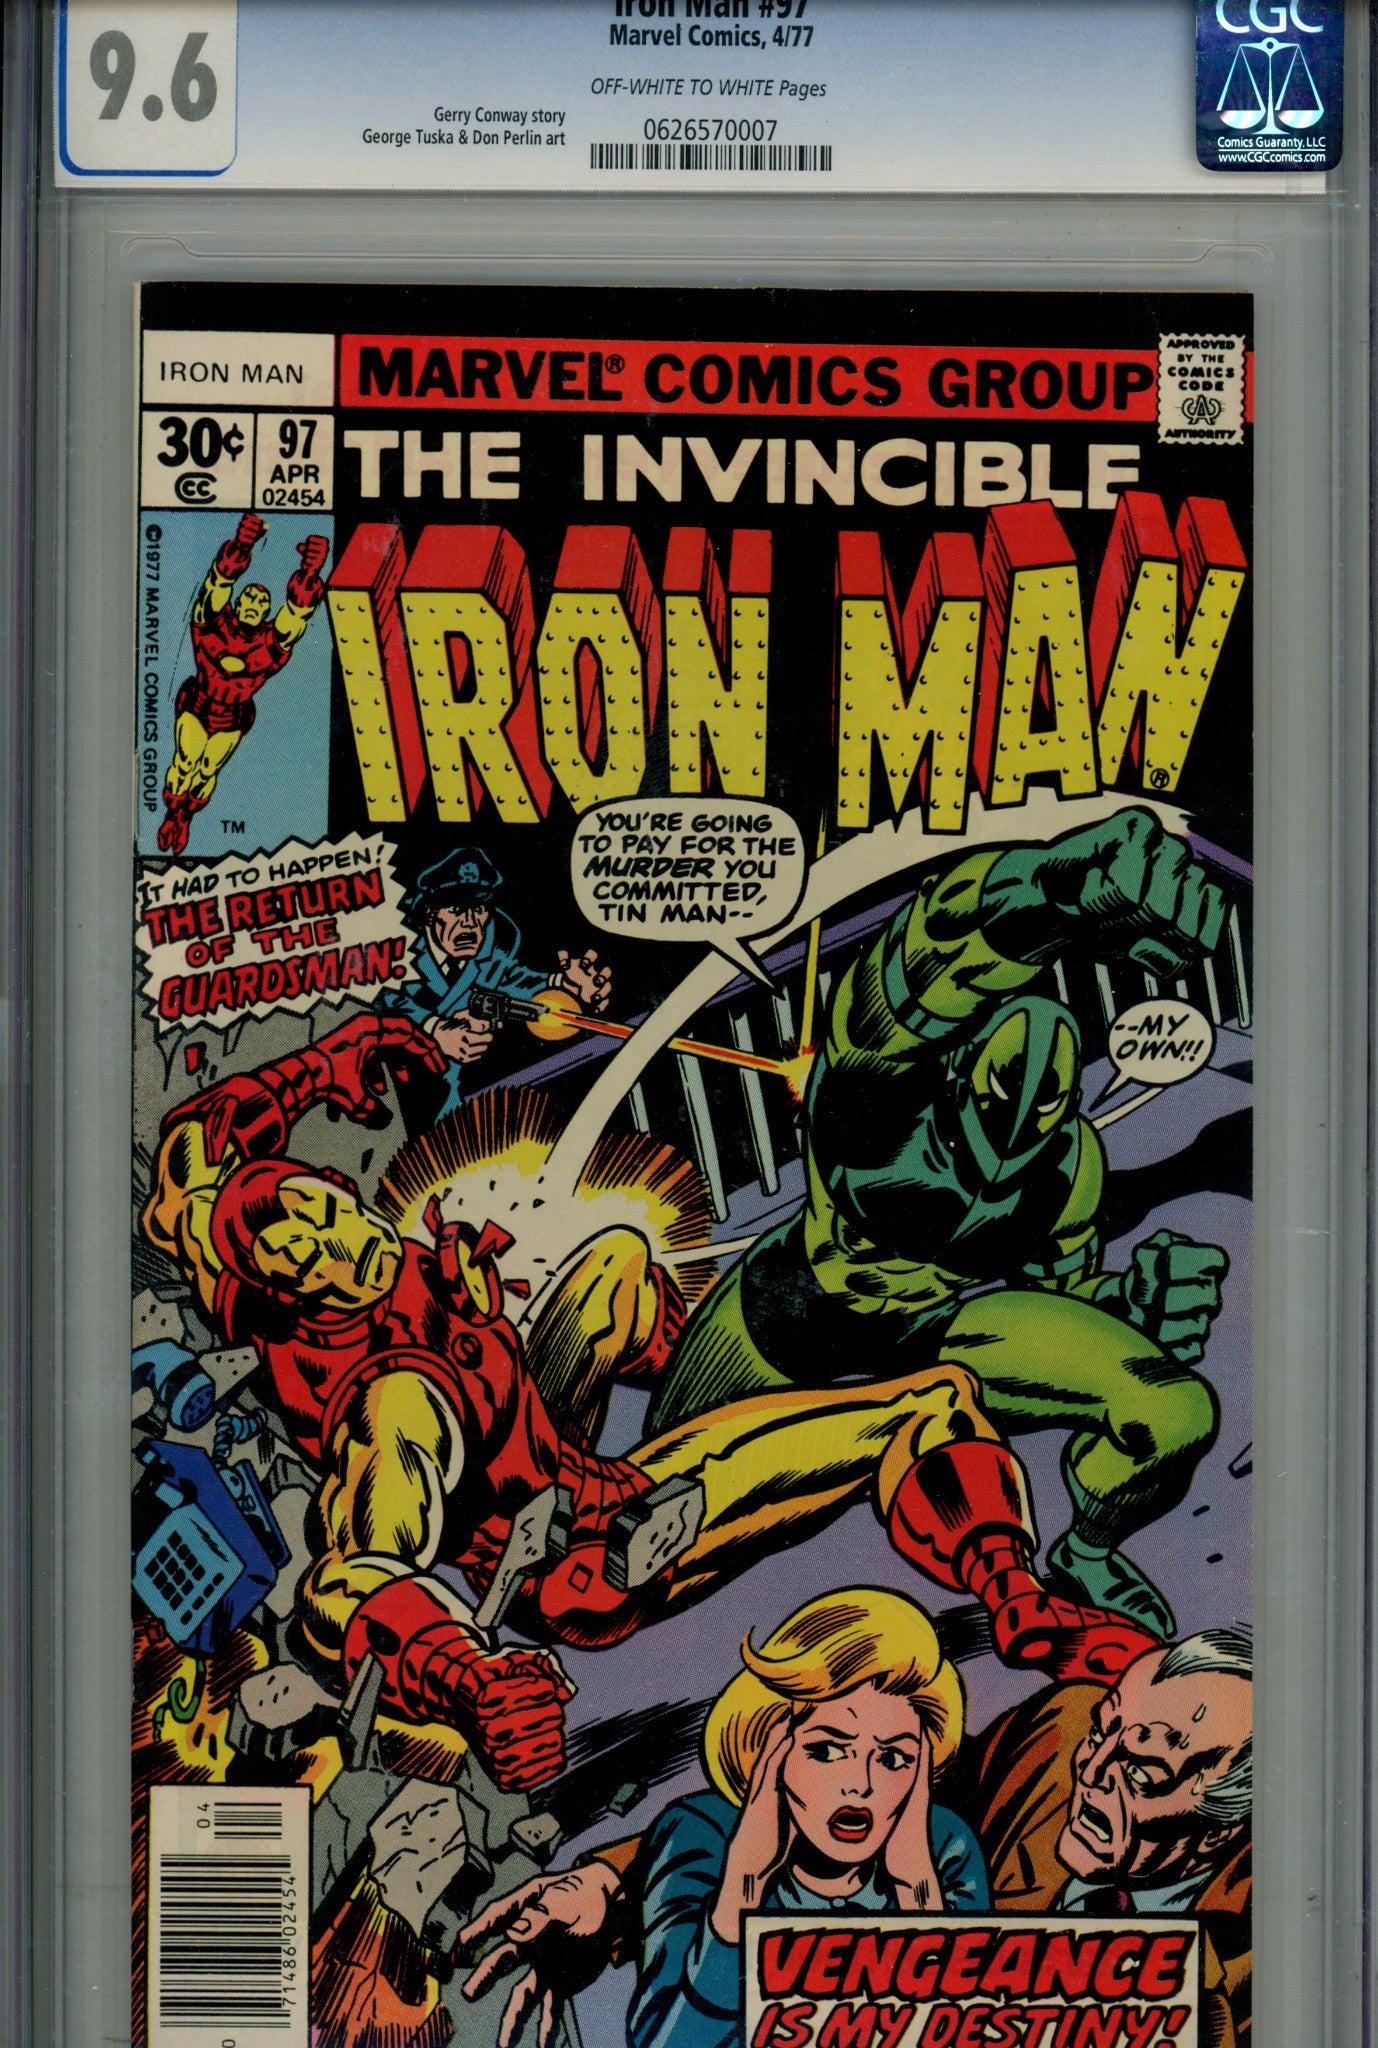 Iron Man Vol 1 97 CGC 9.6 (1977)